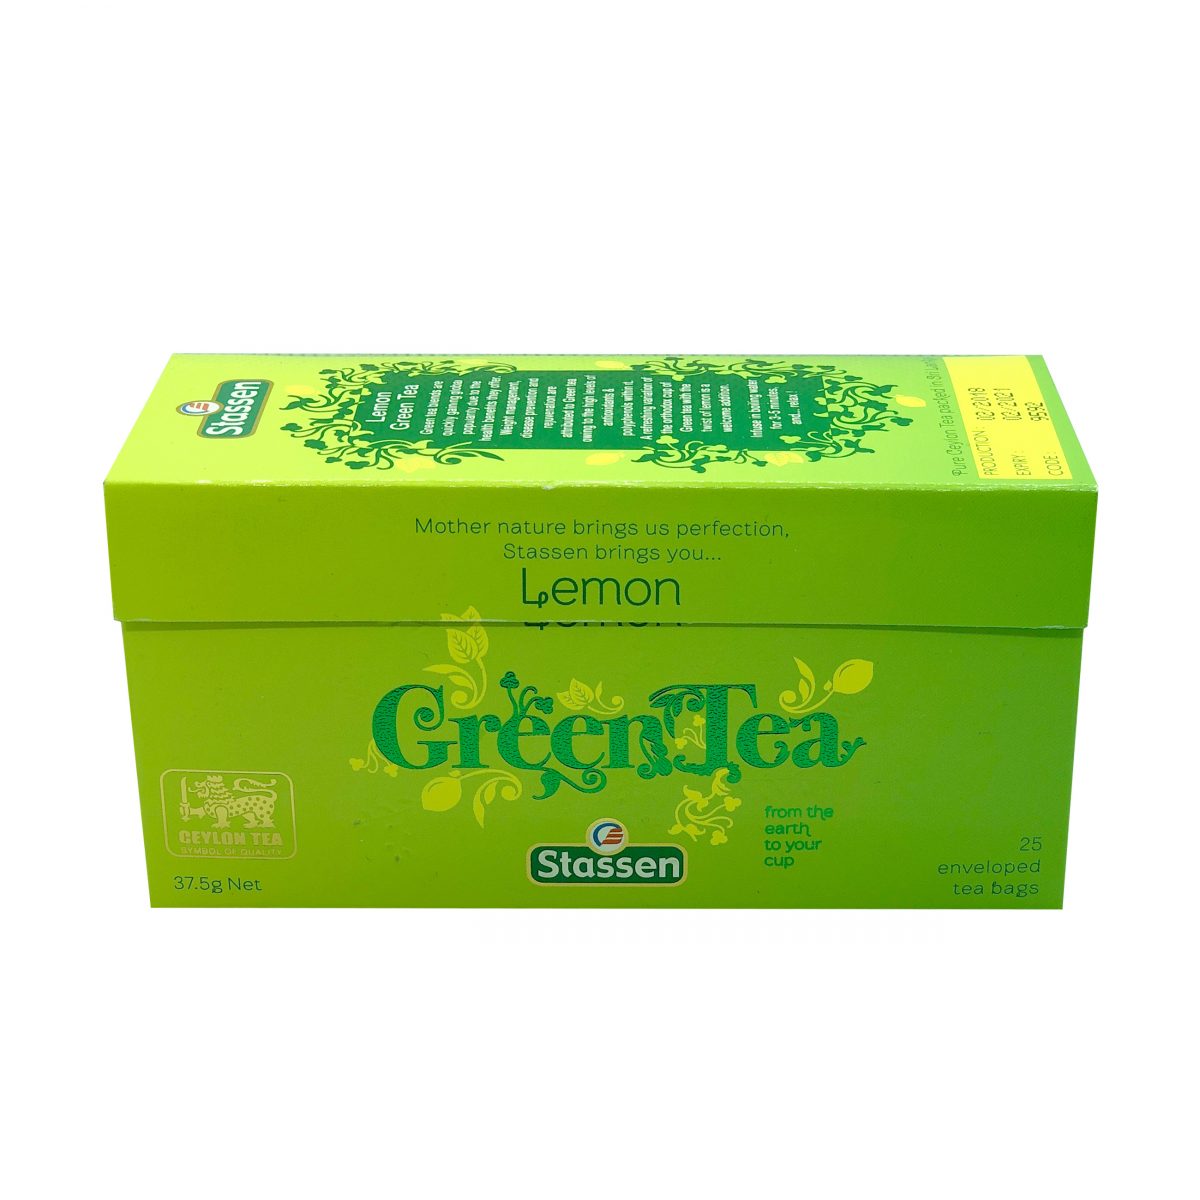 Stassen green tea lemon